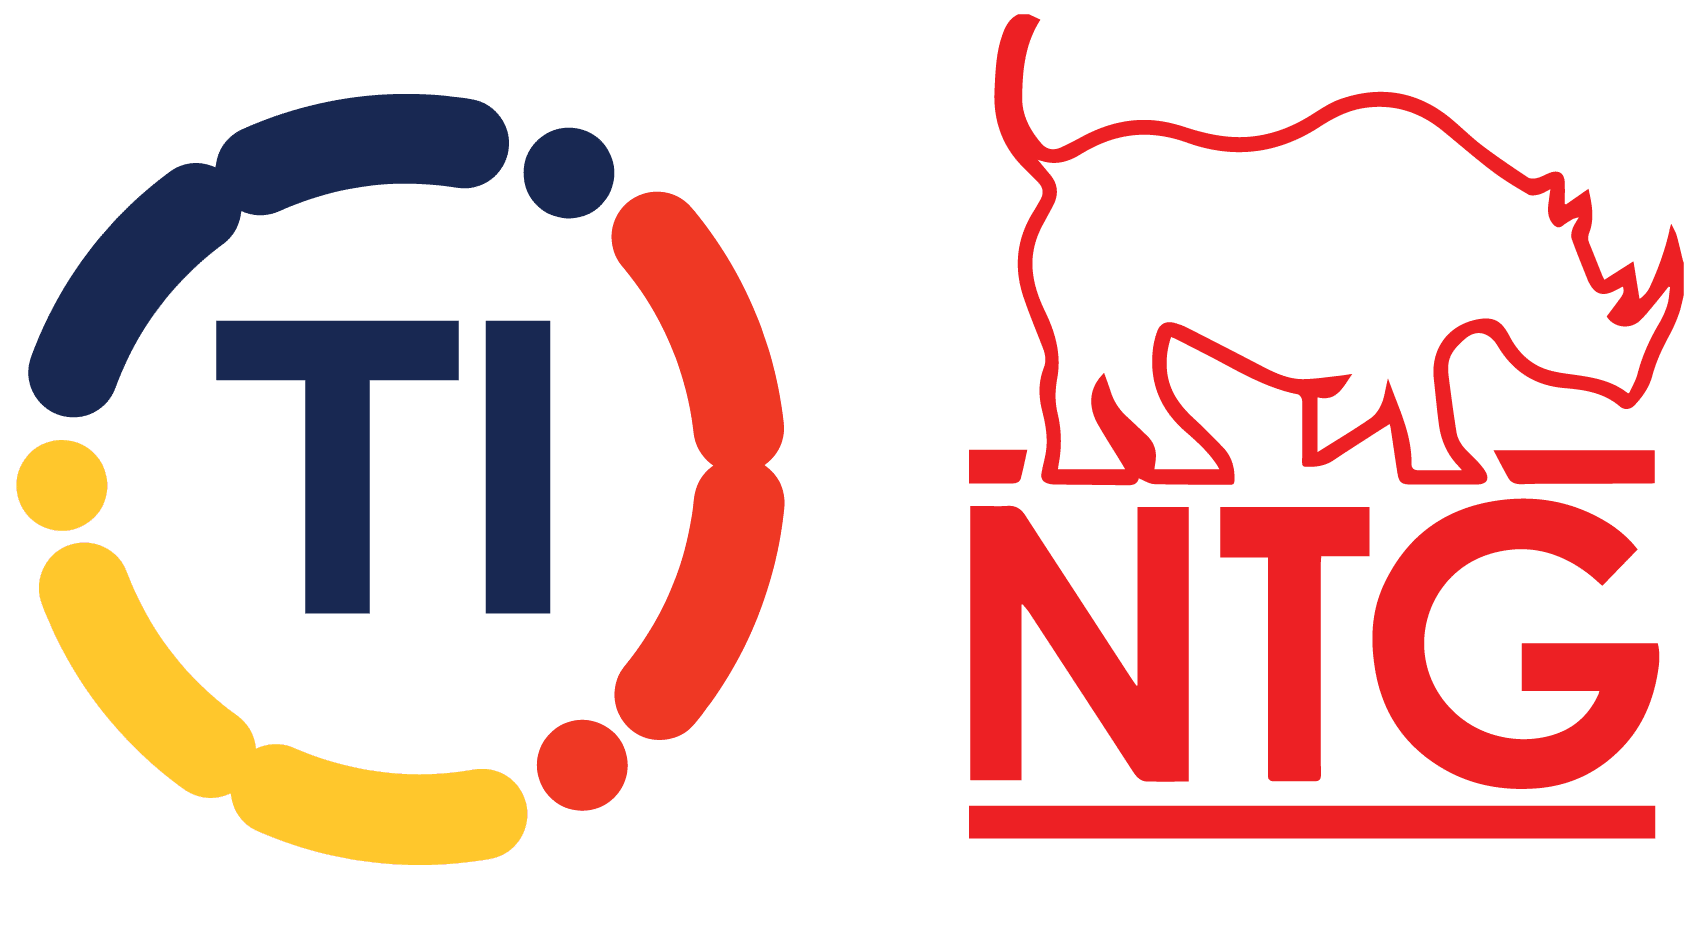 TI & NTG logos